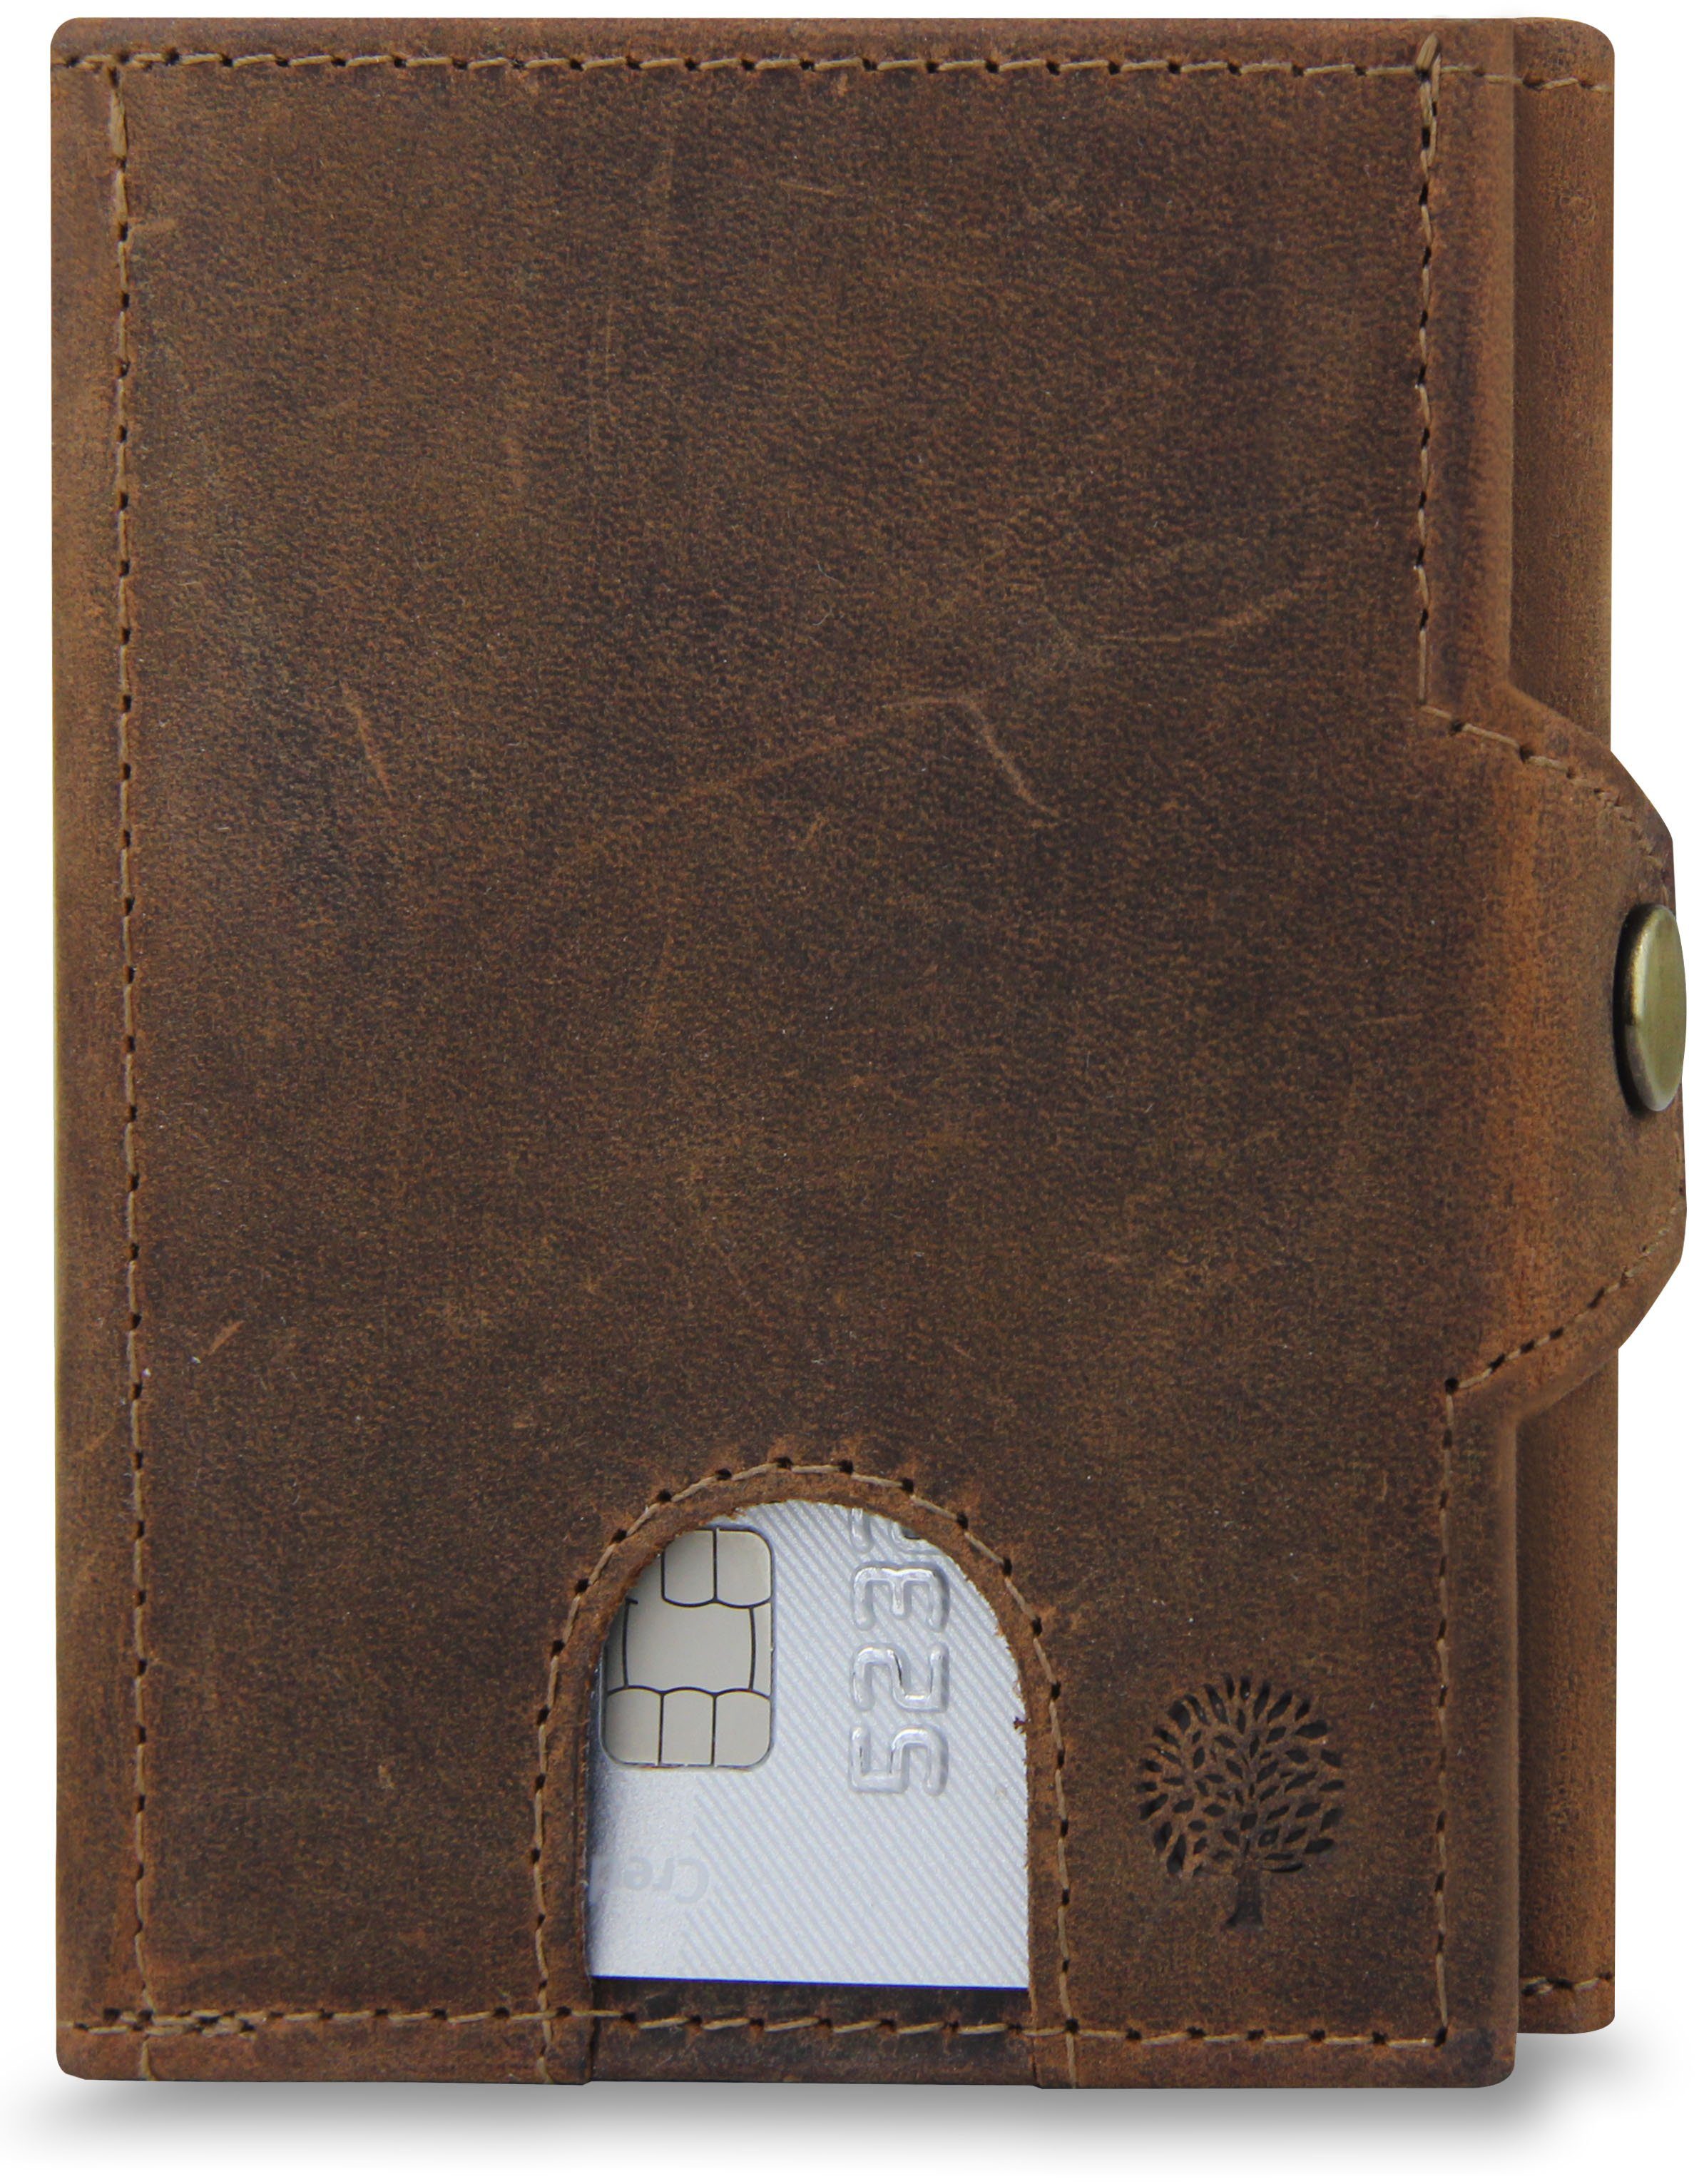 Frentree Mini Geldbörse Slim Wallet mit RFID-Schutz - Geldbörse aus echtem Leder - Mini, Geldbeutel mit Münzfach - Echtleder Portemonnaie Kartenetui Klein Braun Wildleder